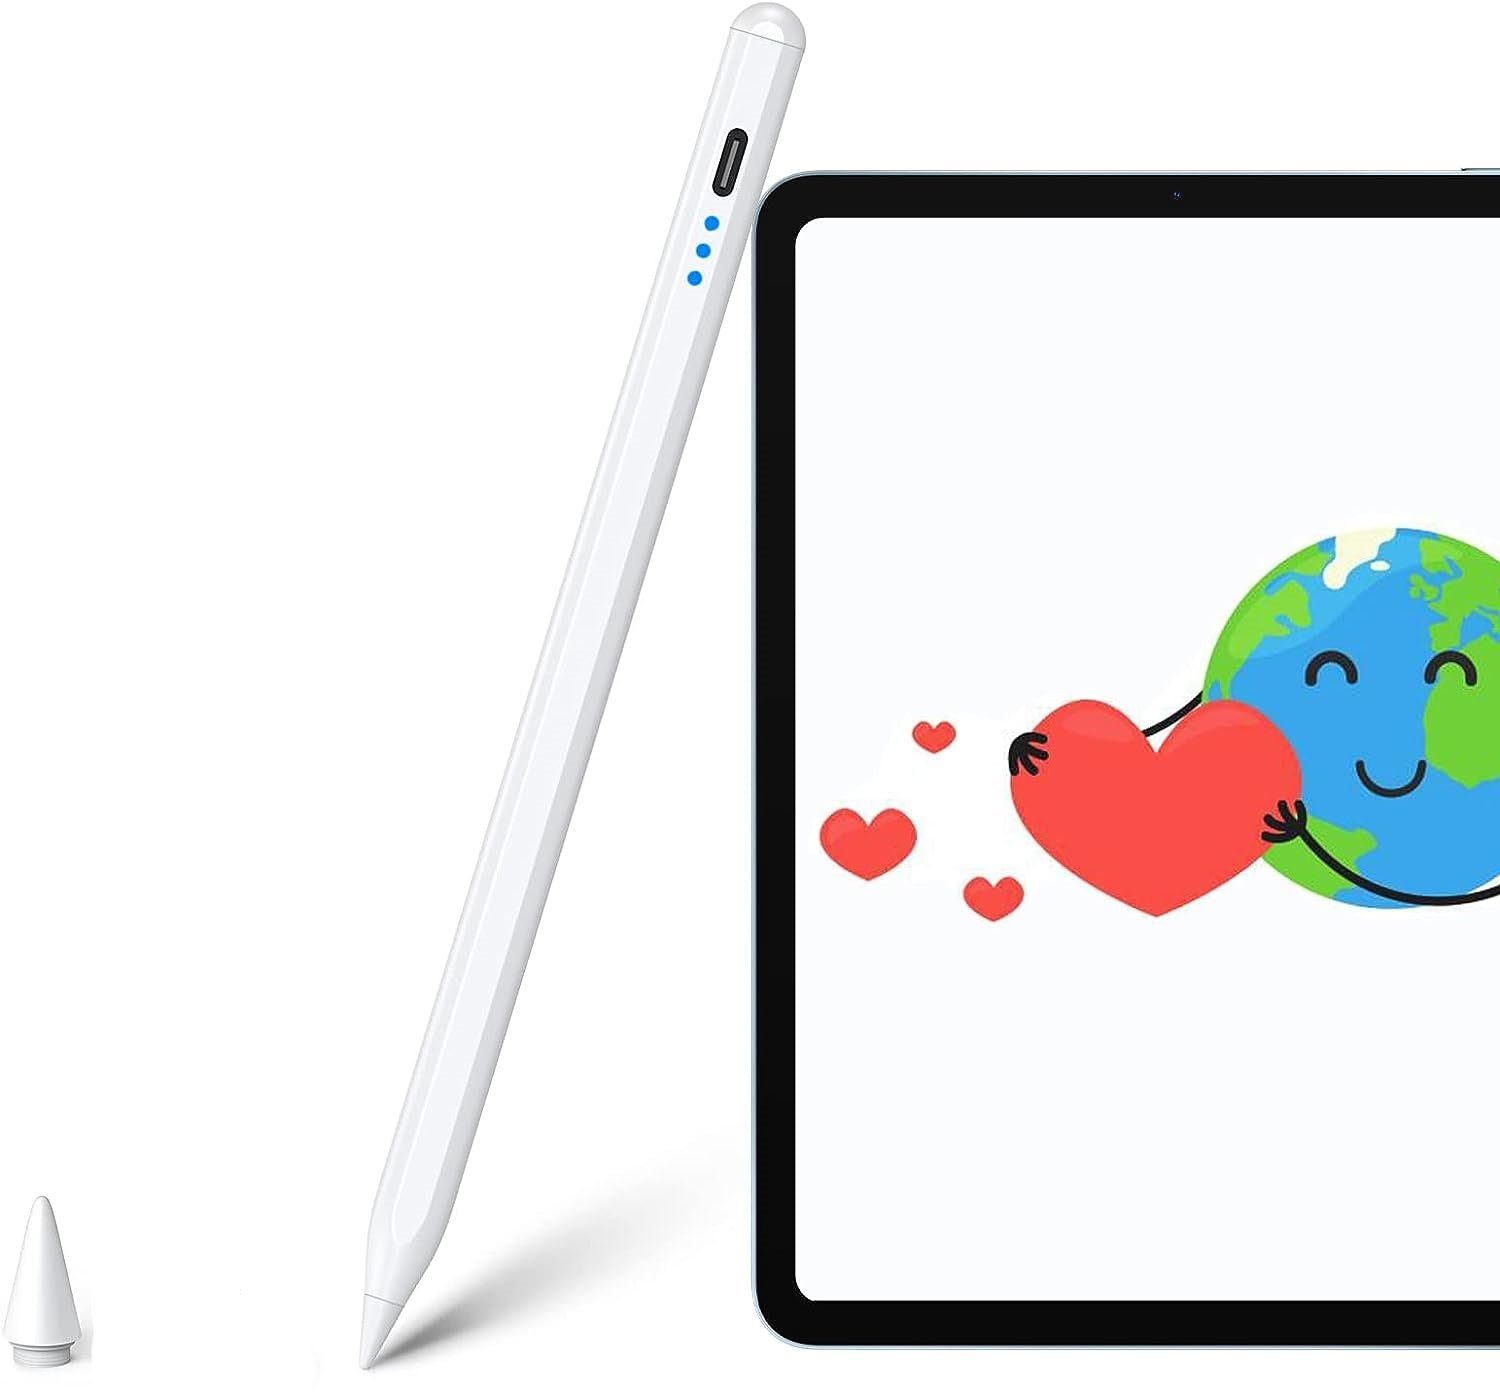 Neigungsempfindlich) Touchscreen 3 Touchstift Apple mit Eingabestift Air Magnetisches (Hochpräzise iPad f. Handflächenerkennung Pro iPad Mini Kompatibel Pen REDOM iPad iPad Pen 2018-2023 Pencil Stift Stylus LED-Anzeige iPad